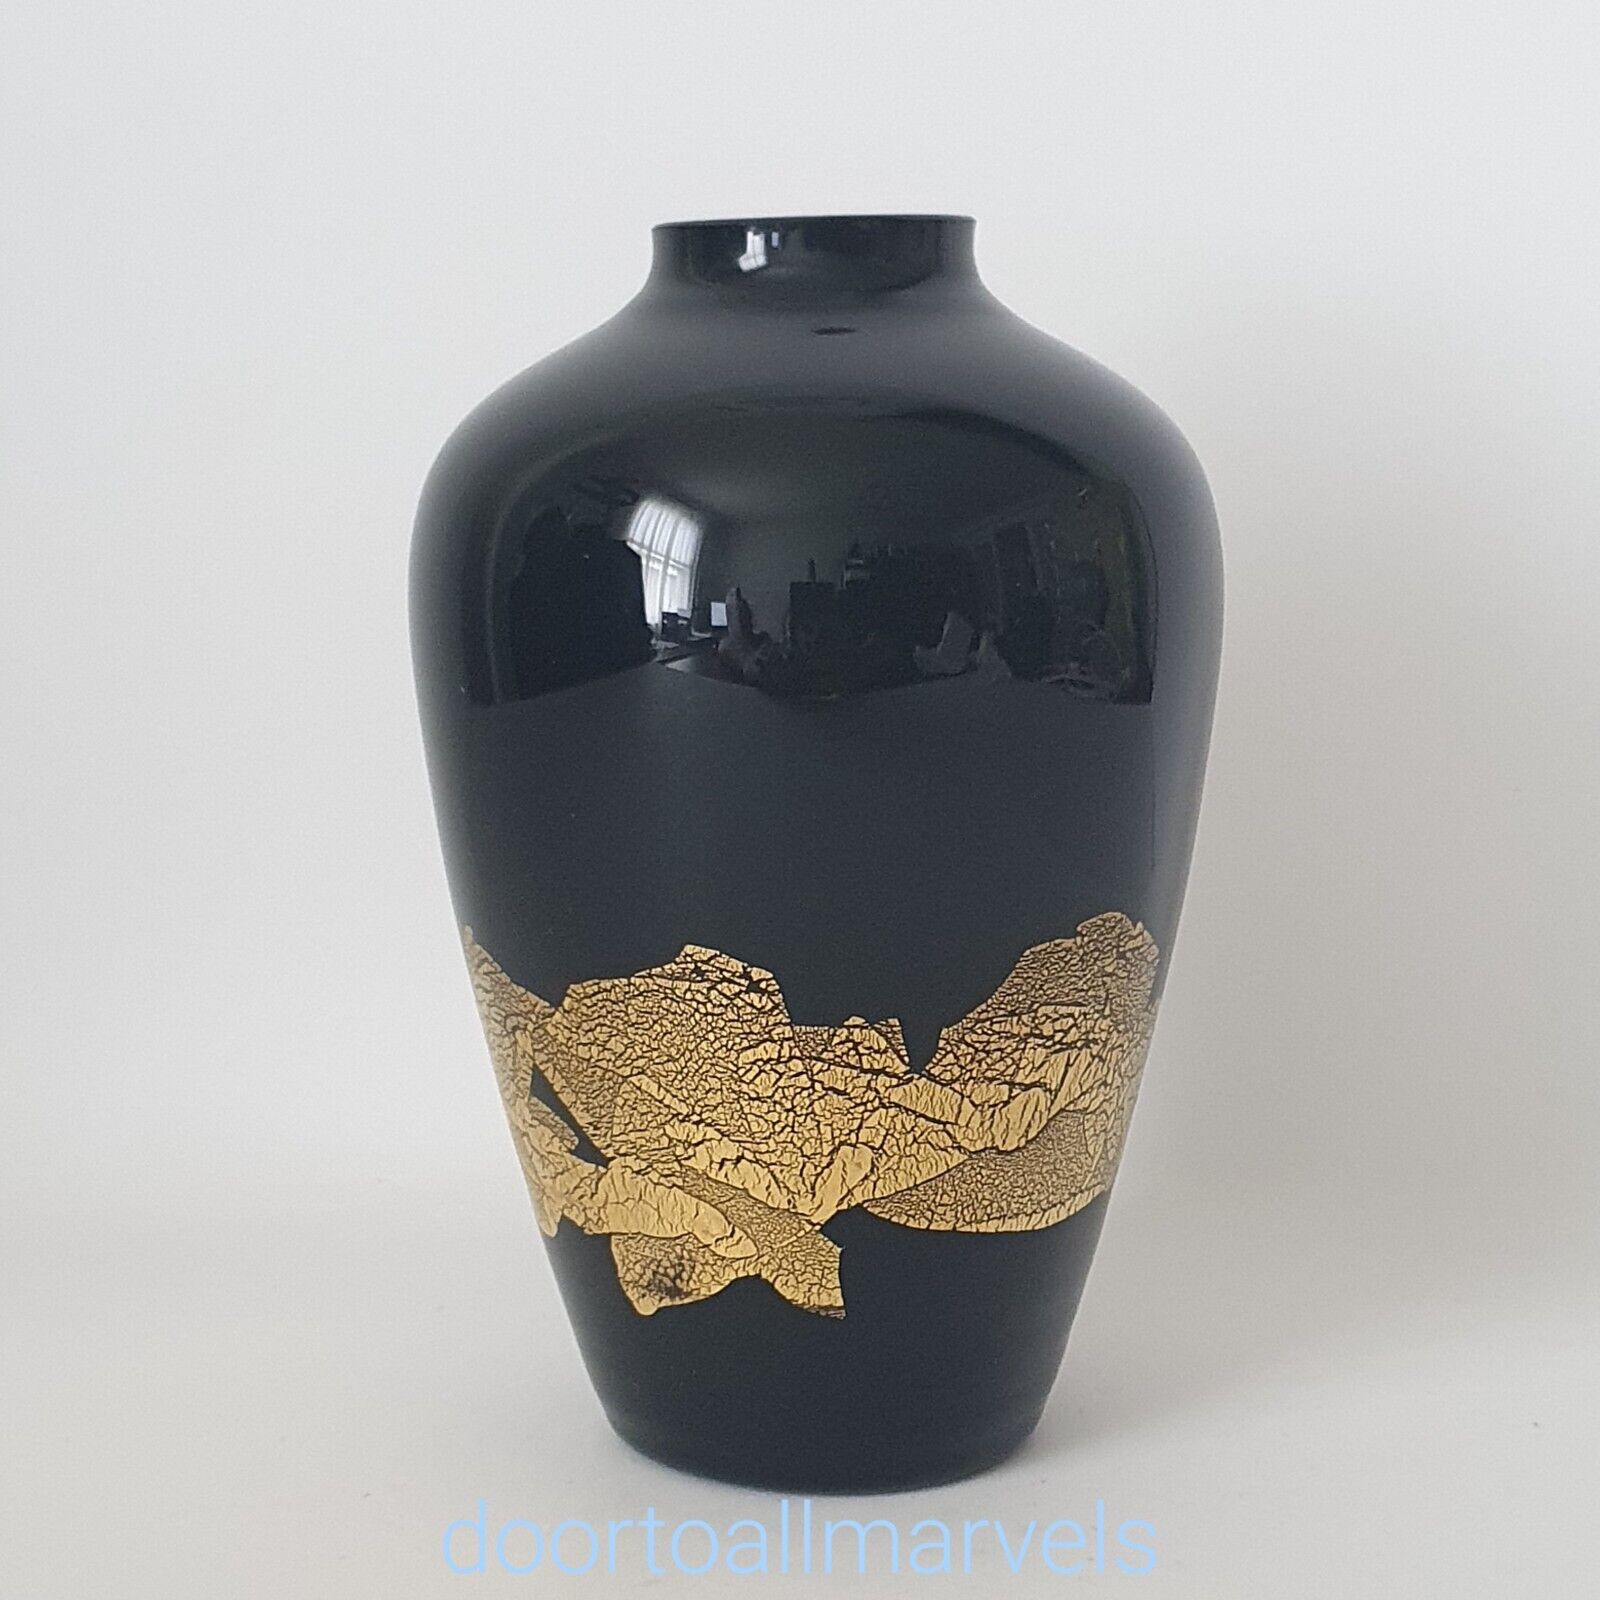 VTG Stuart Strathearn Jet Black Glass Urn w/Gold Foil Bud Vase HandBlown 5.25